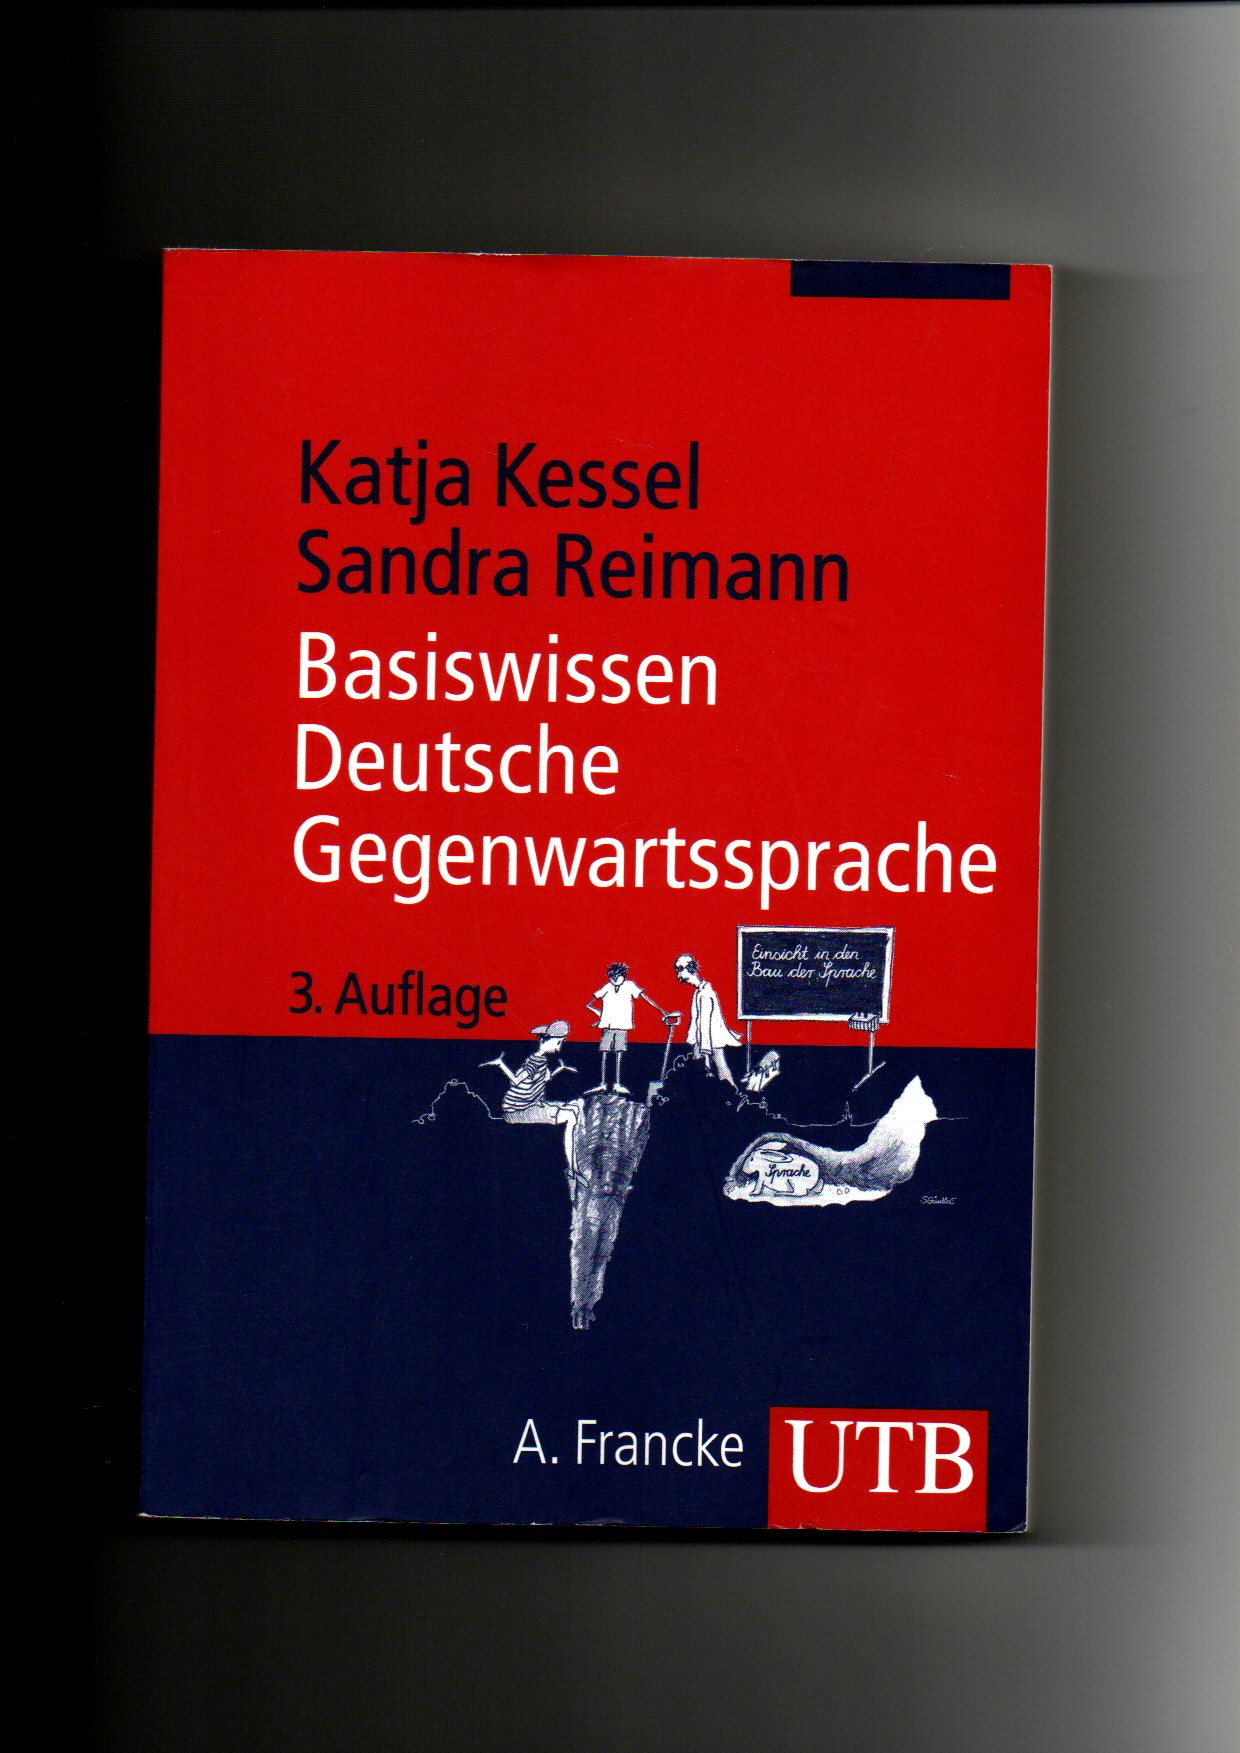 Katja Kessel, Reimann, Basiswissen deutsche Gegenwartssprache (2010) - Kessel, Katja (Verfasser) und Sandra (Verfasser) Reimann